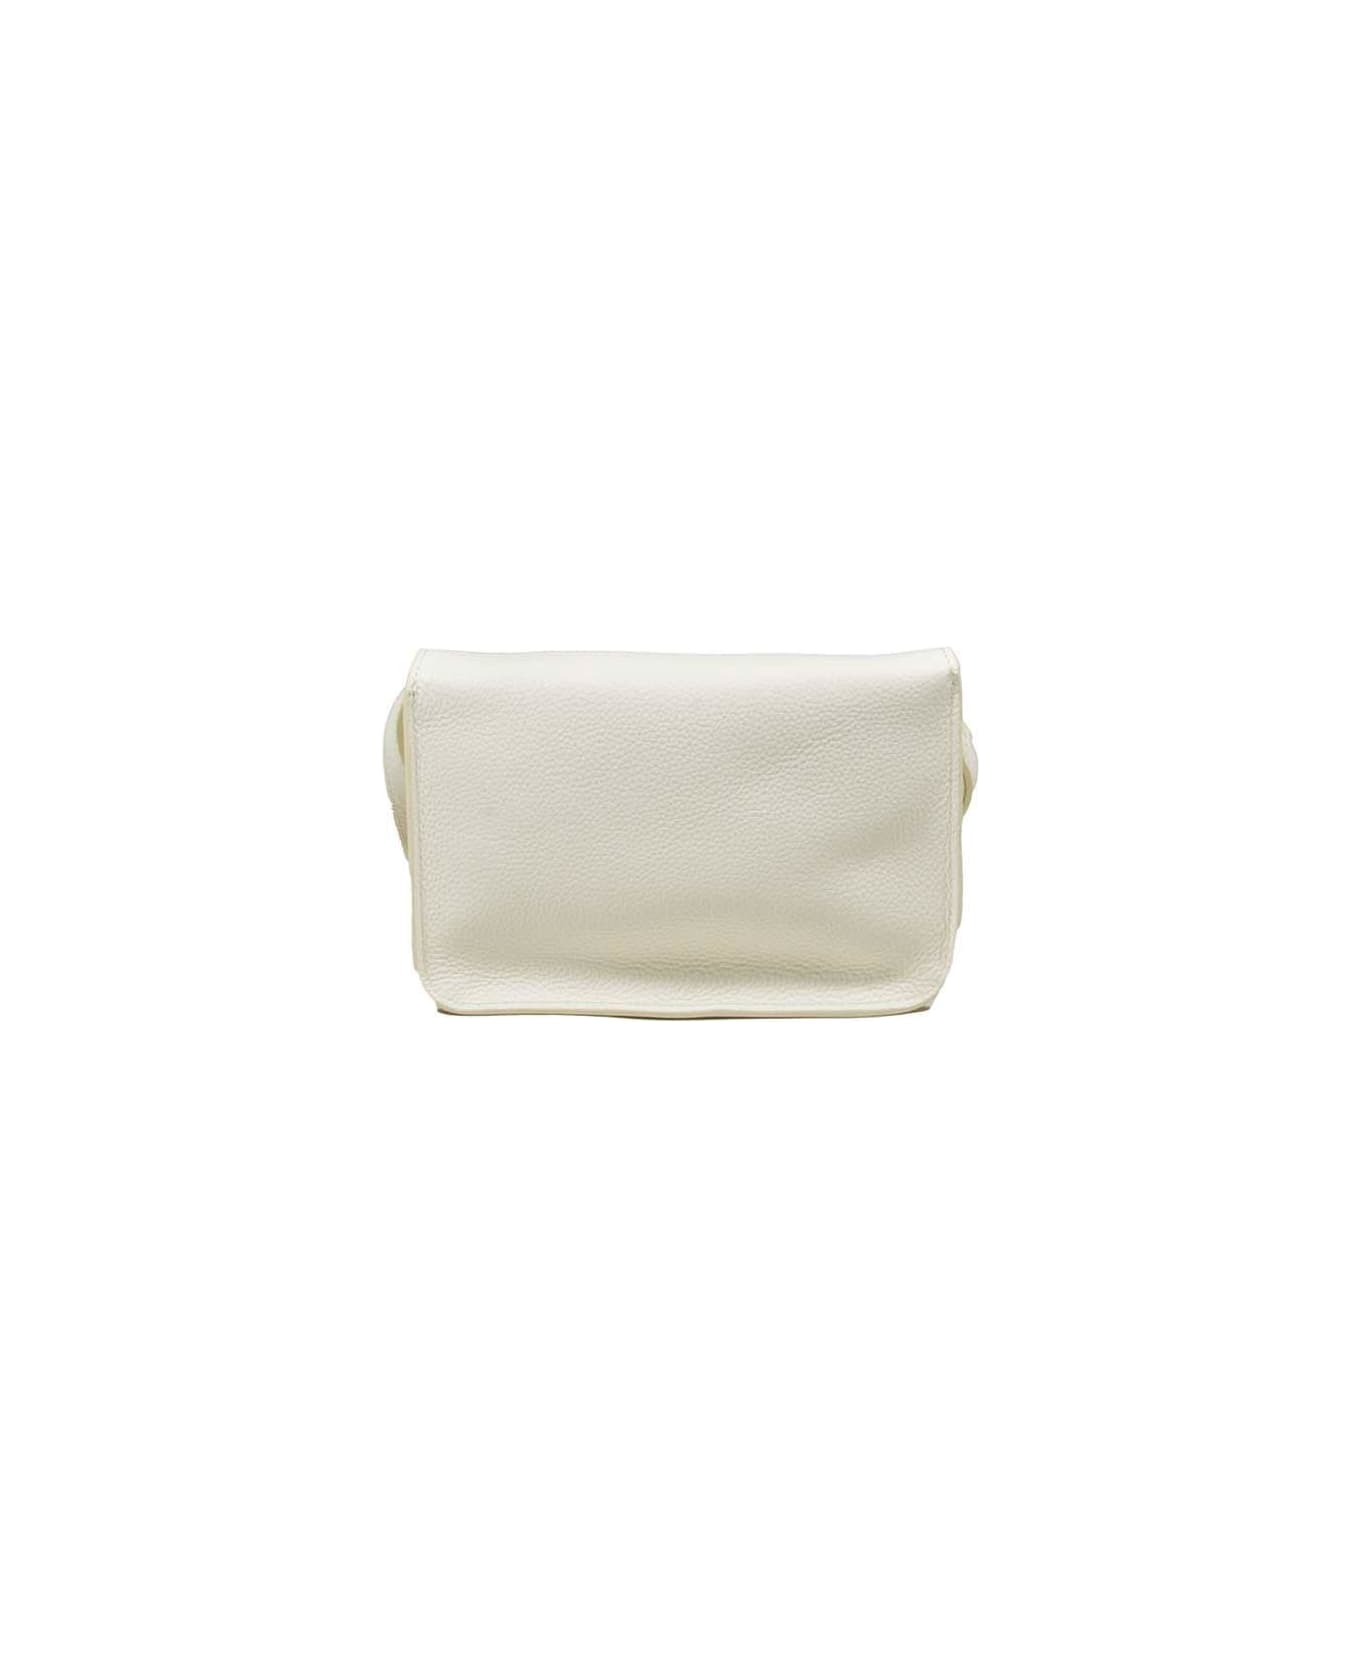 Marni Logo-embroidered Foldover Top Belt Bag - Bianco